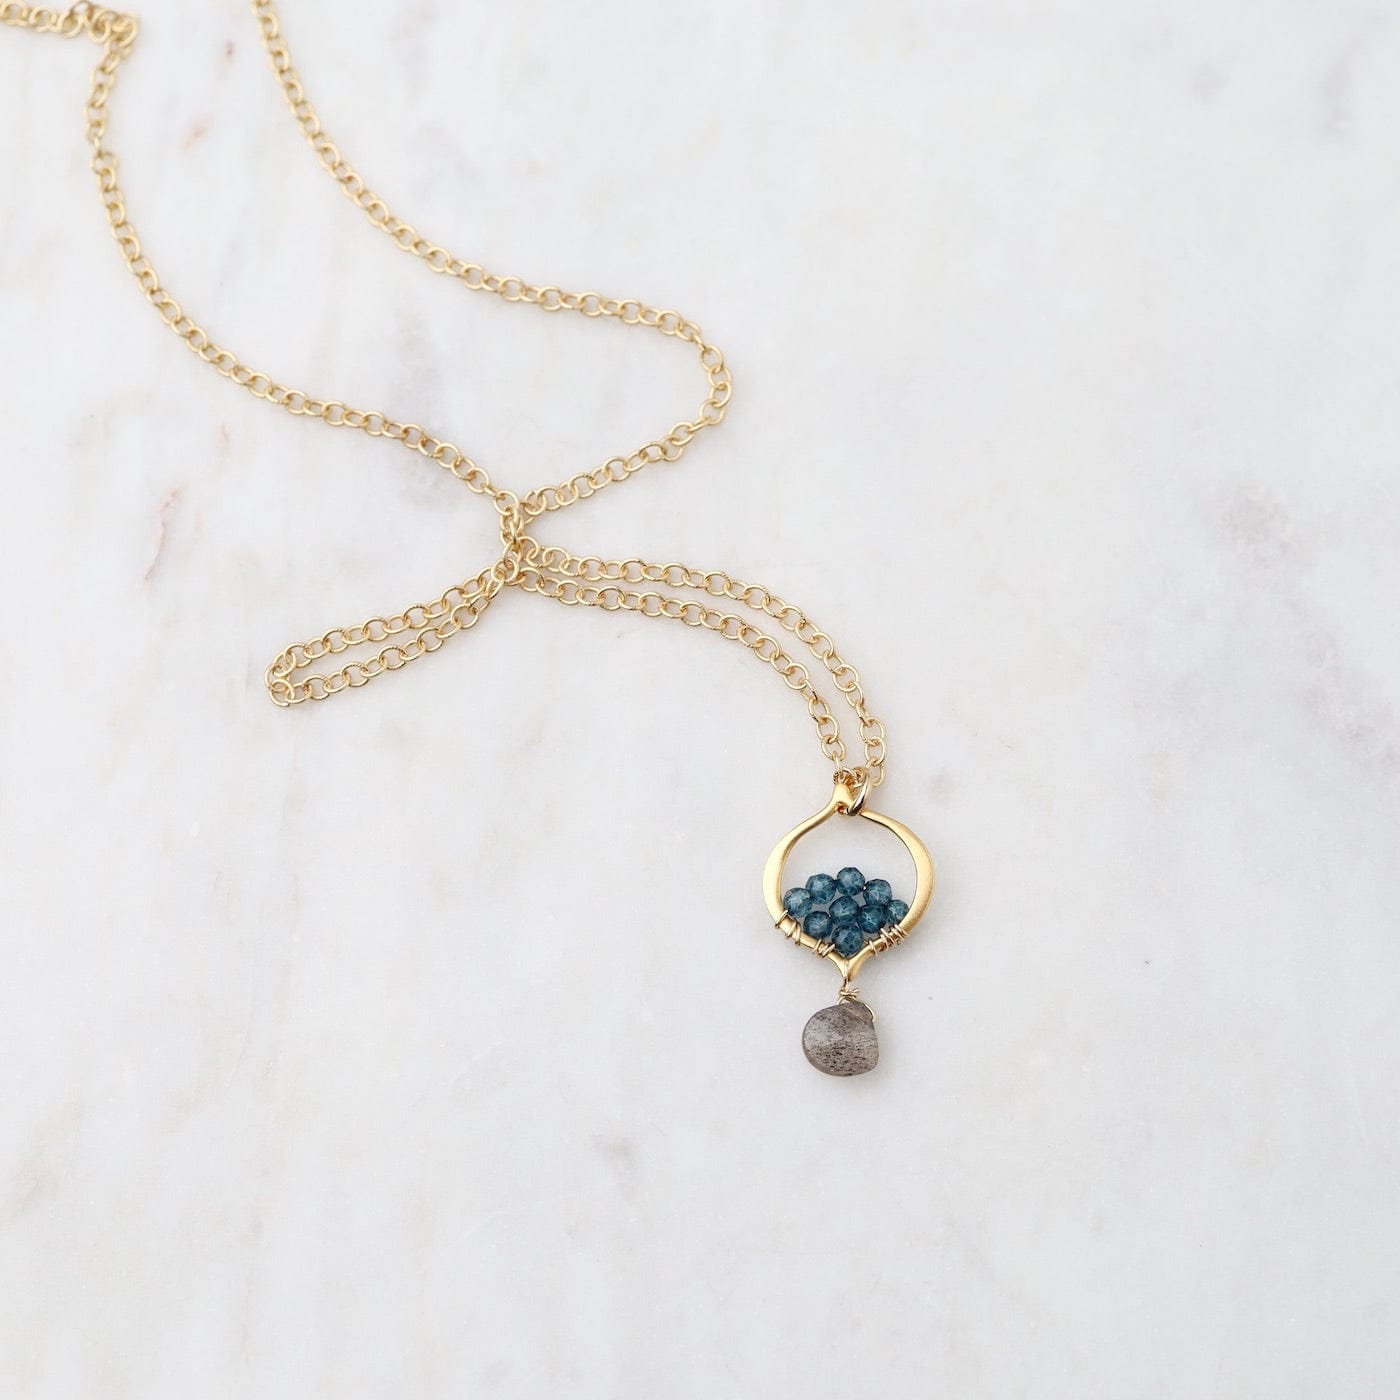 NKL-GF Arabesque Labradorite and Blue Quartz Necklace